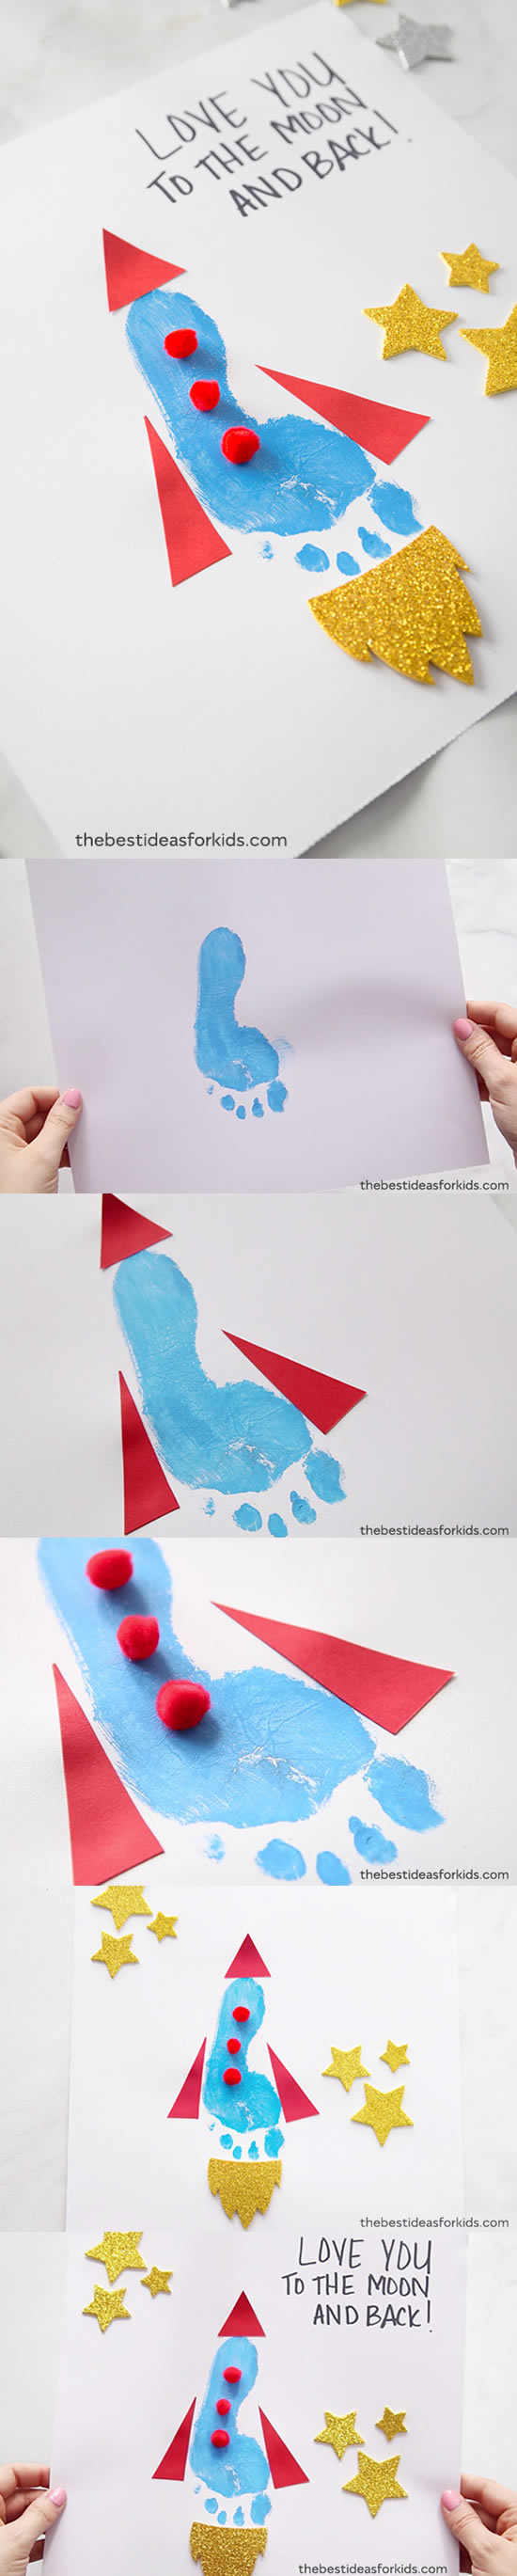 Cartão para o Dia dos Pais Infantil com Pintura